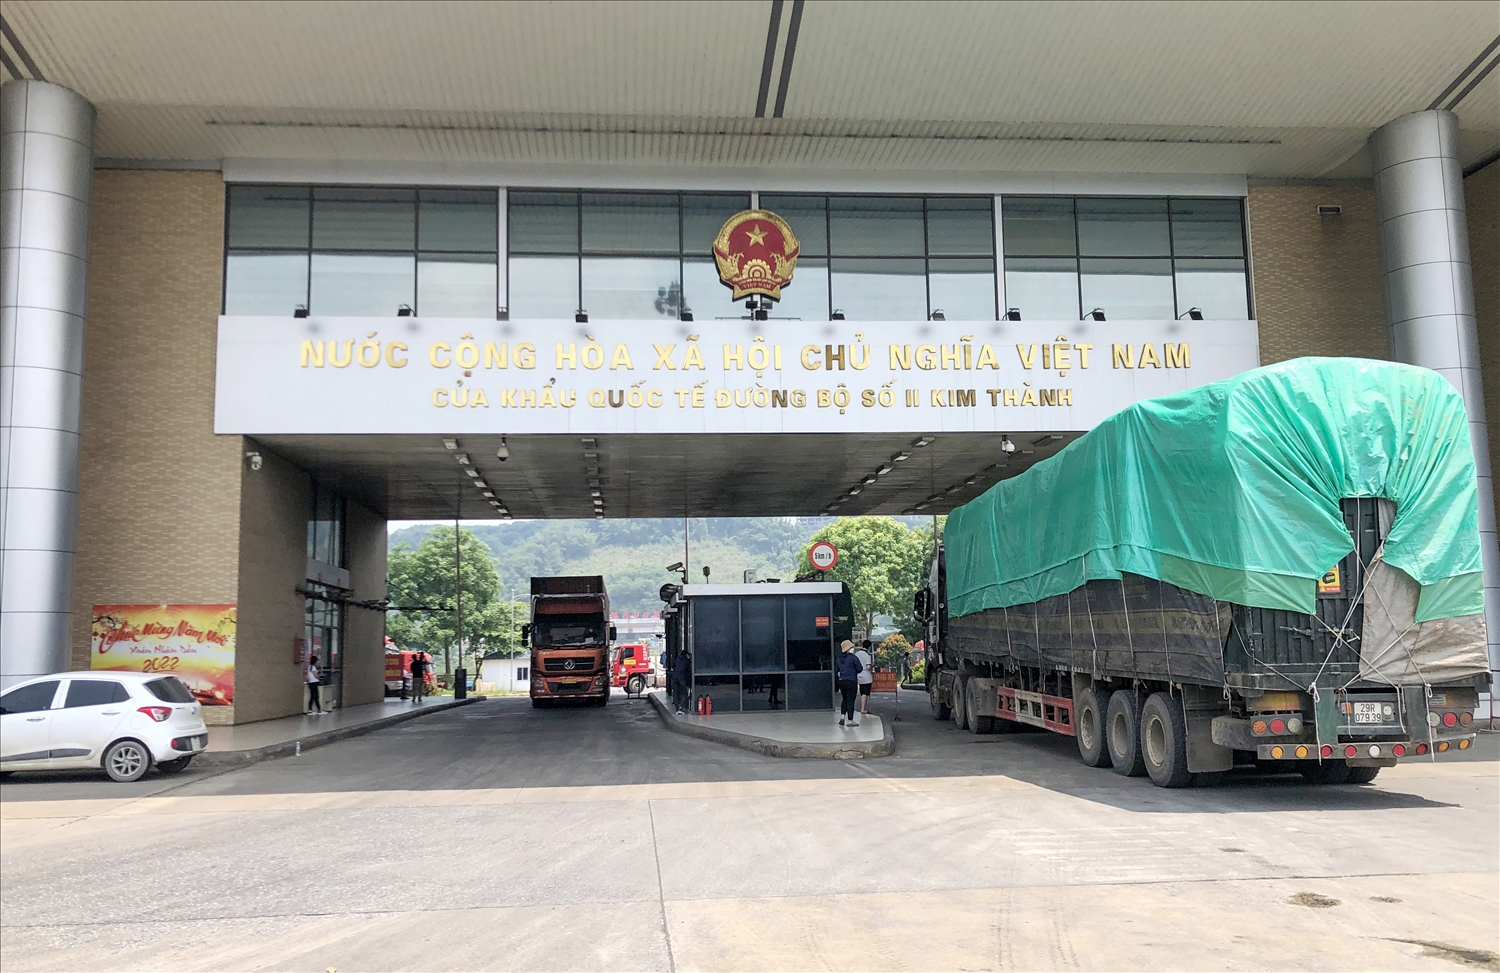 Hàng hóa xuất nhập khẩu qua cửa khẩu Kim Thành đang từng bước phục hồi trở lại